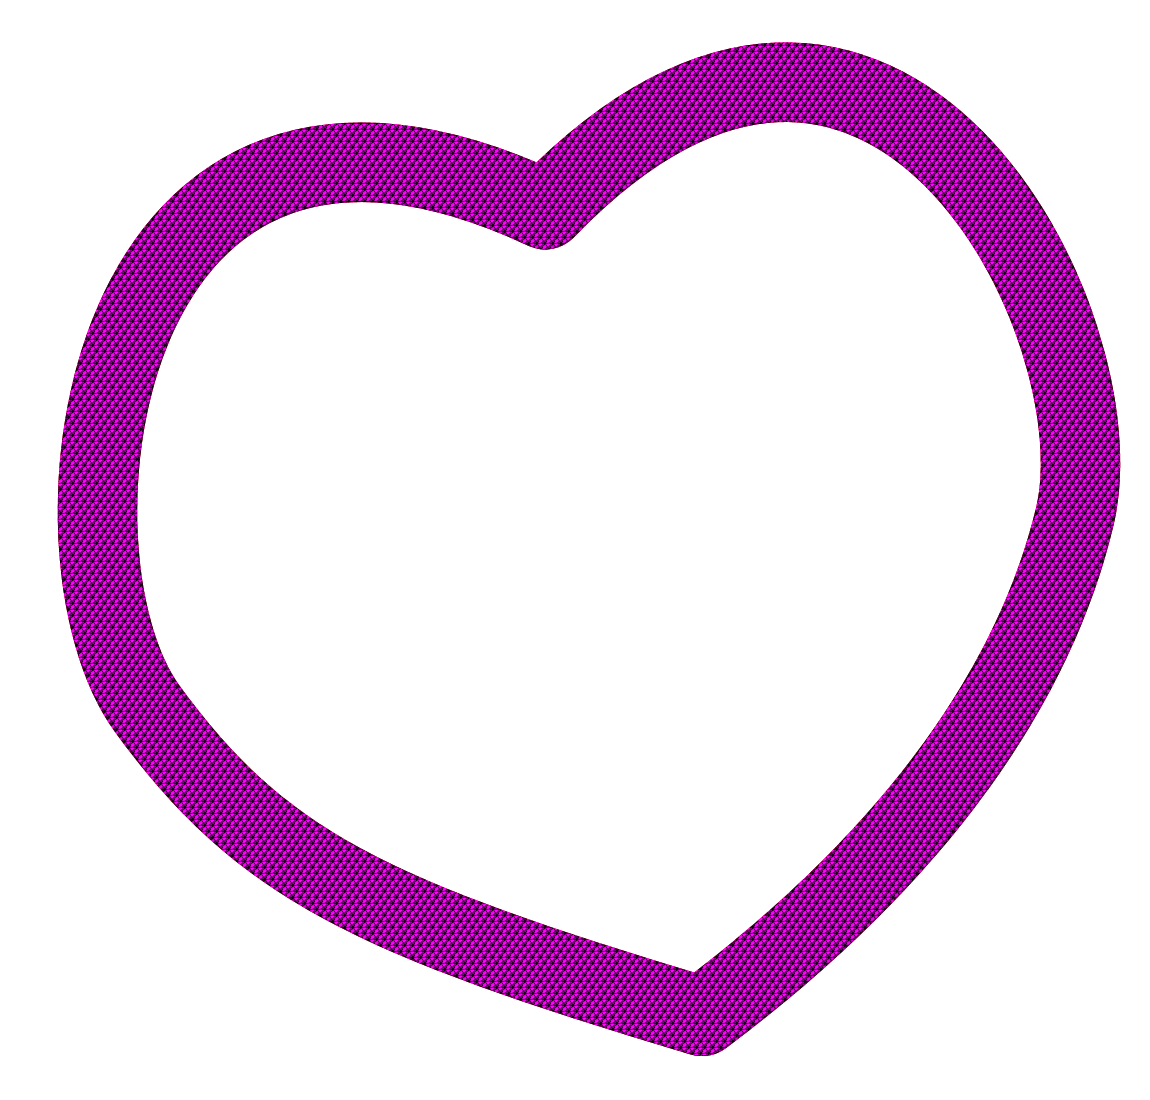 Purple heart clip art | Clipart Panda - Free Clipart Images